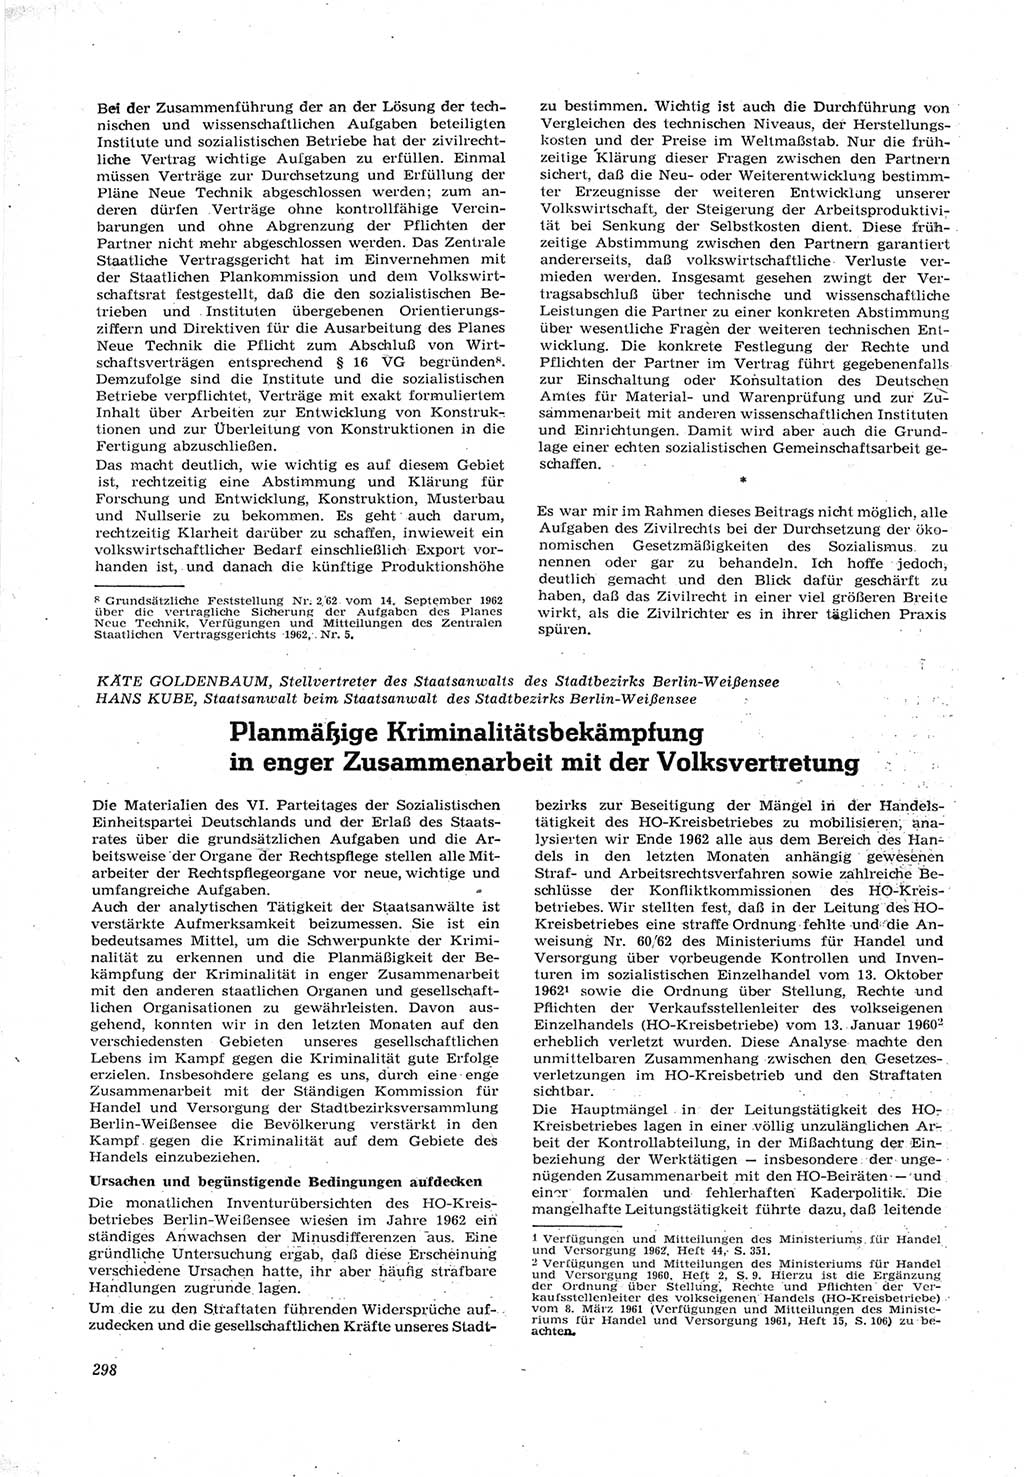 Neue Justiz (NJ), Zeitschrift für Recht und Rechtswissenschaft [Deutsche Demokratische Republik (DDR)], 17. Jahrgang 1963, Seite 298 (NJ DDR 1963, S. 298)